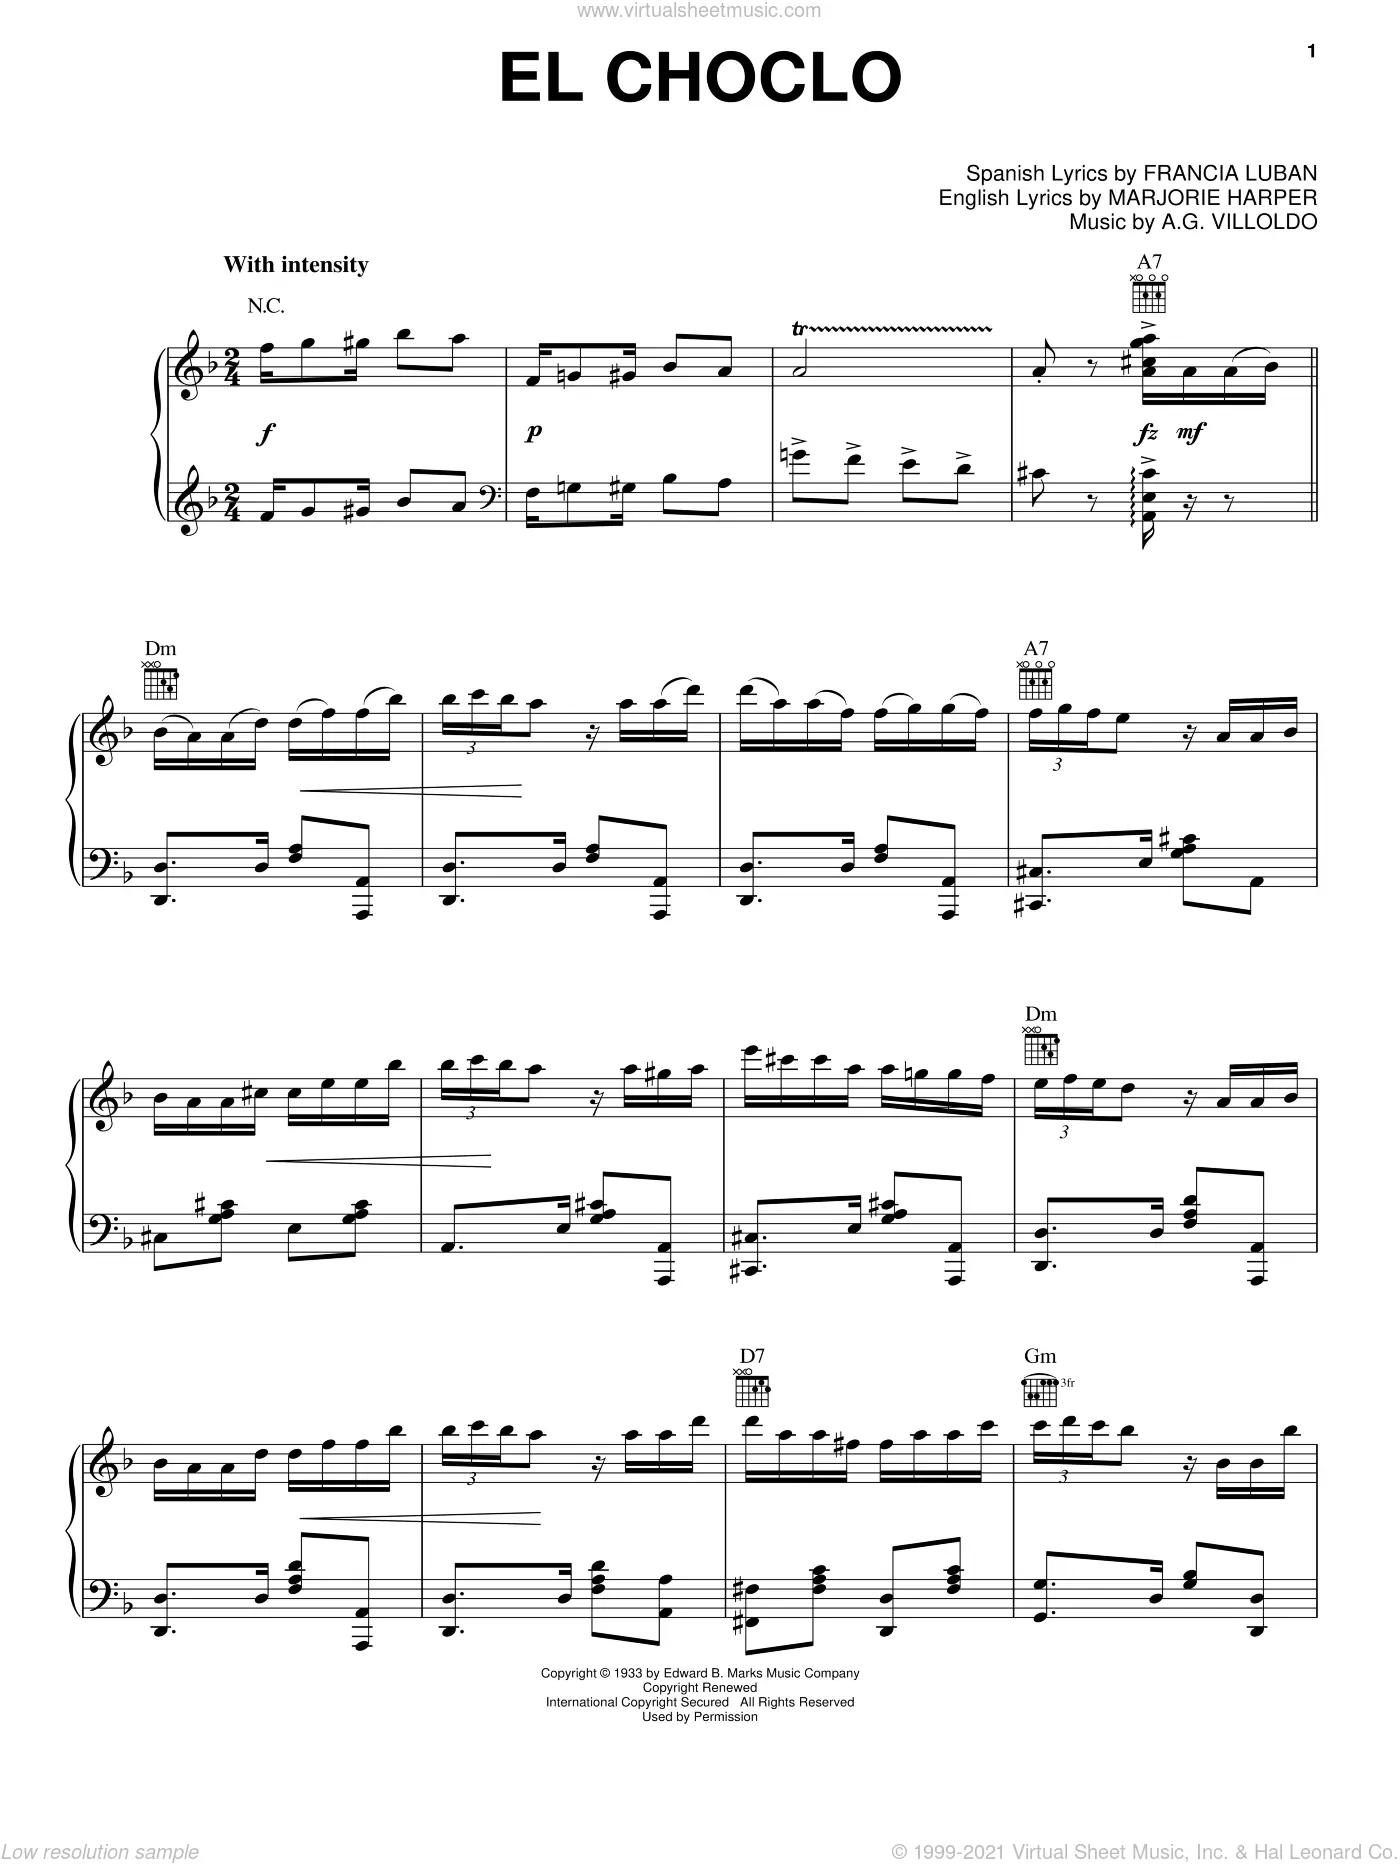 Articulación caricia Dar Ángel Villoldo - Free sheet music to download in PDF, MP3 & Midi